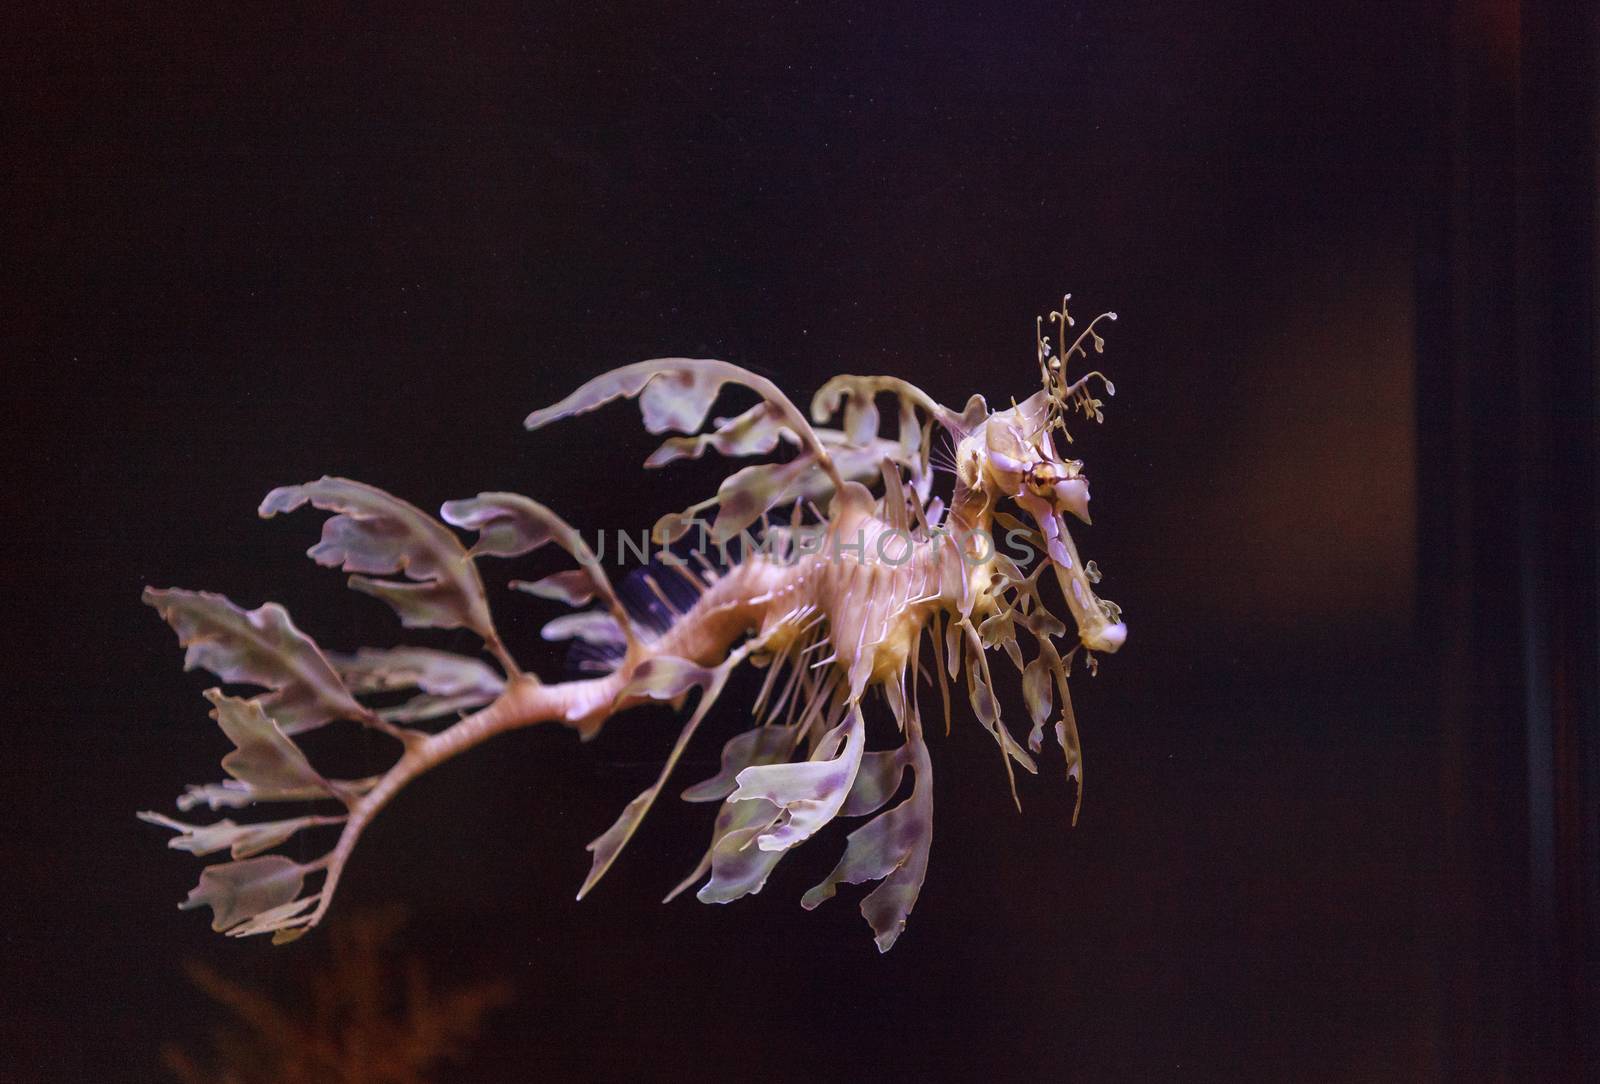 leafy seadragon by steffstarr